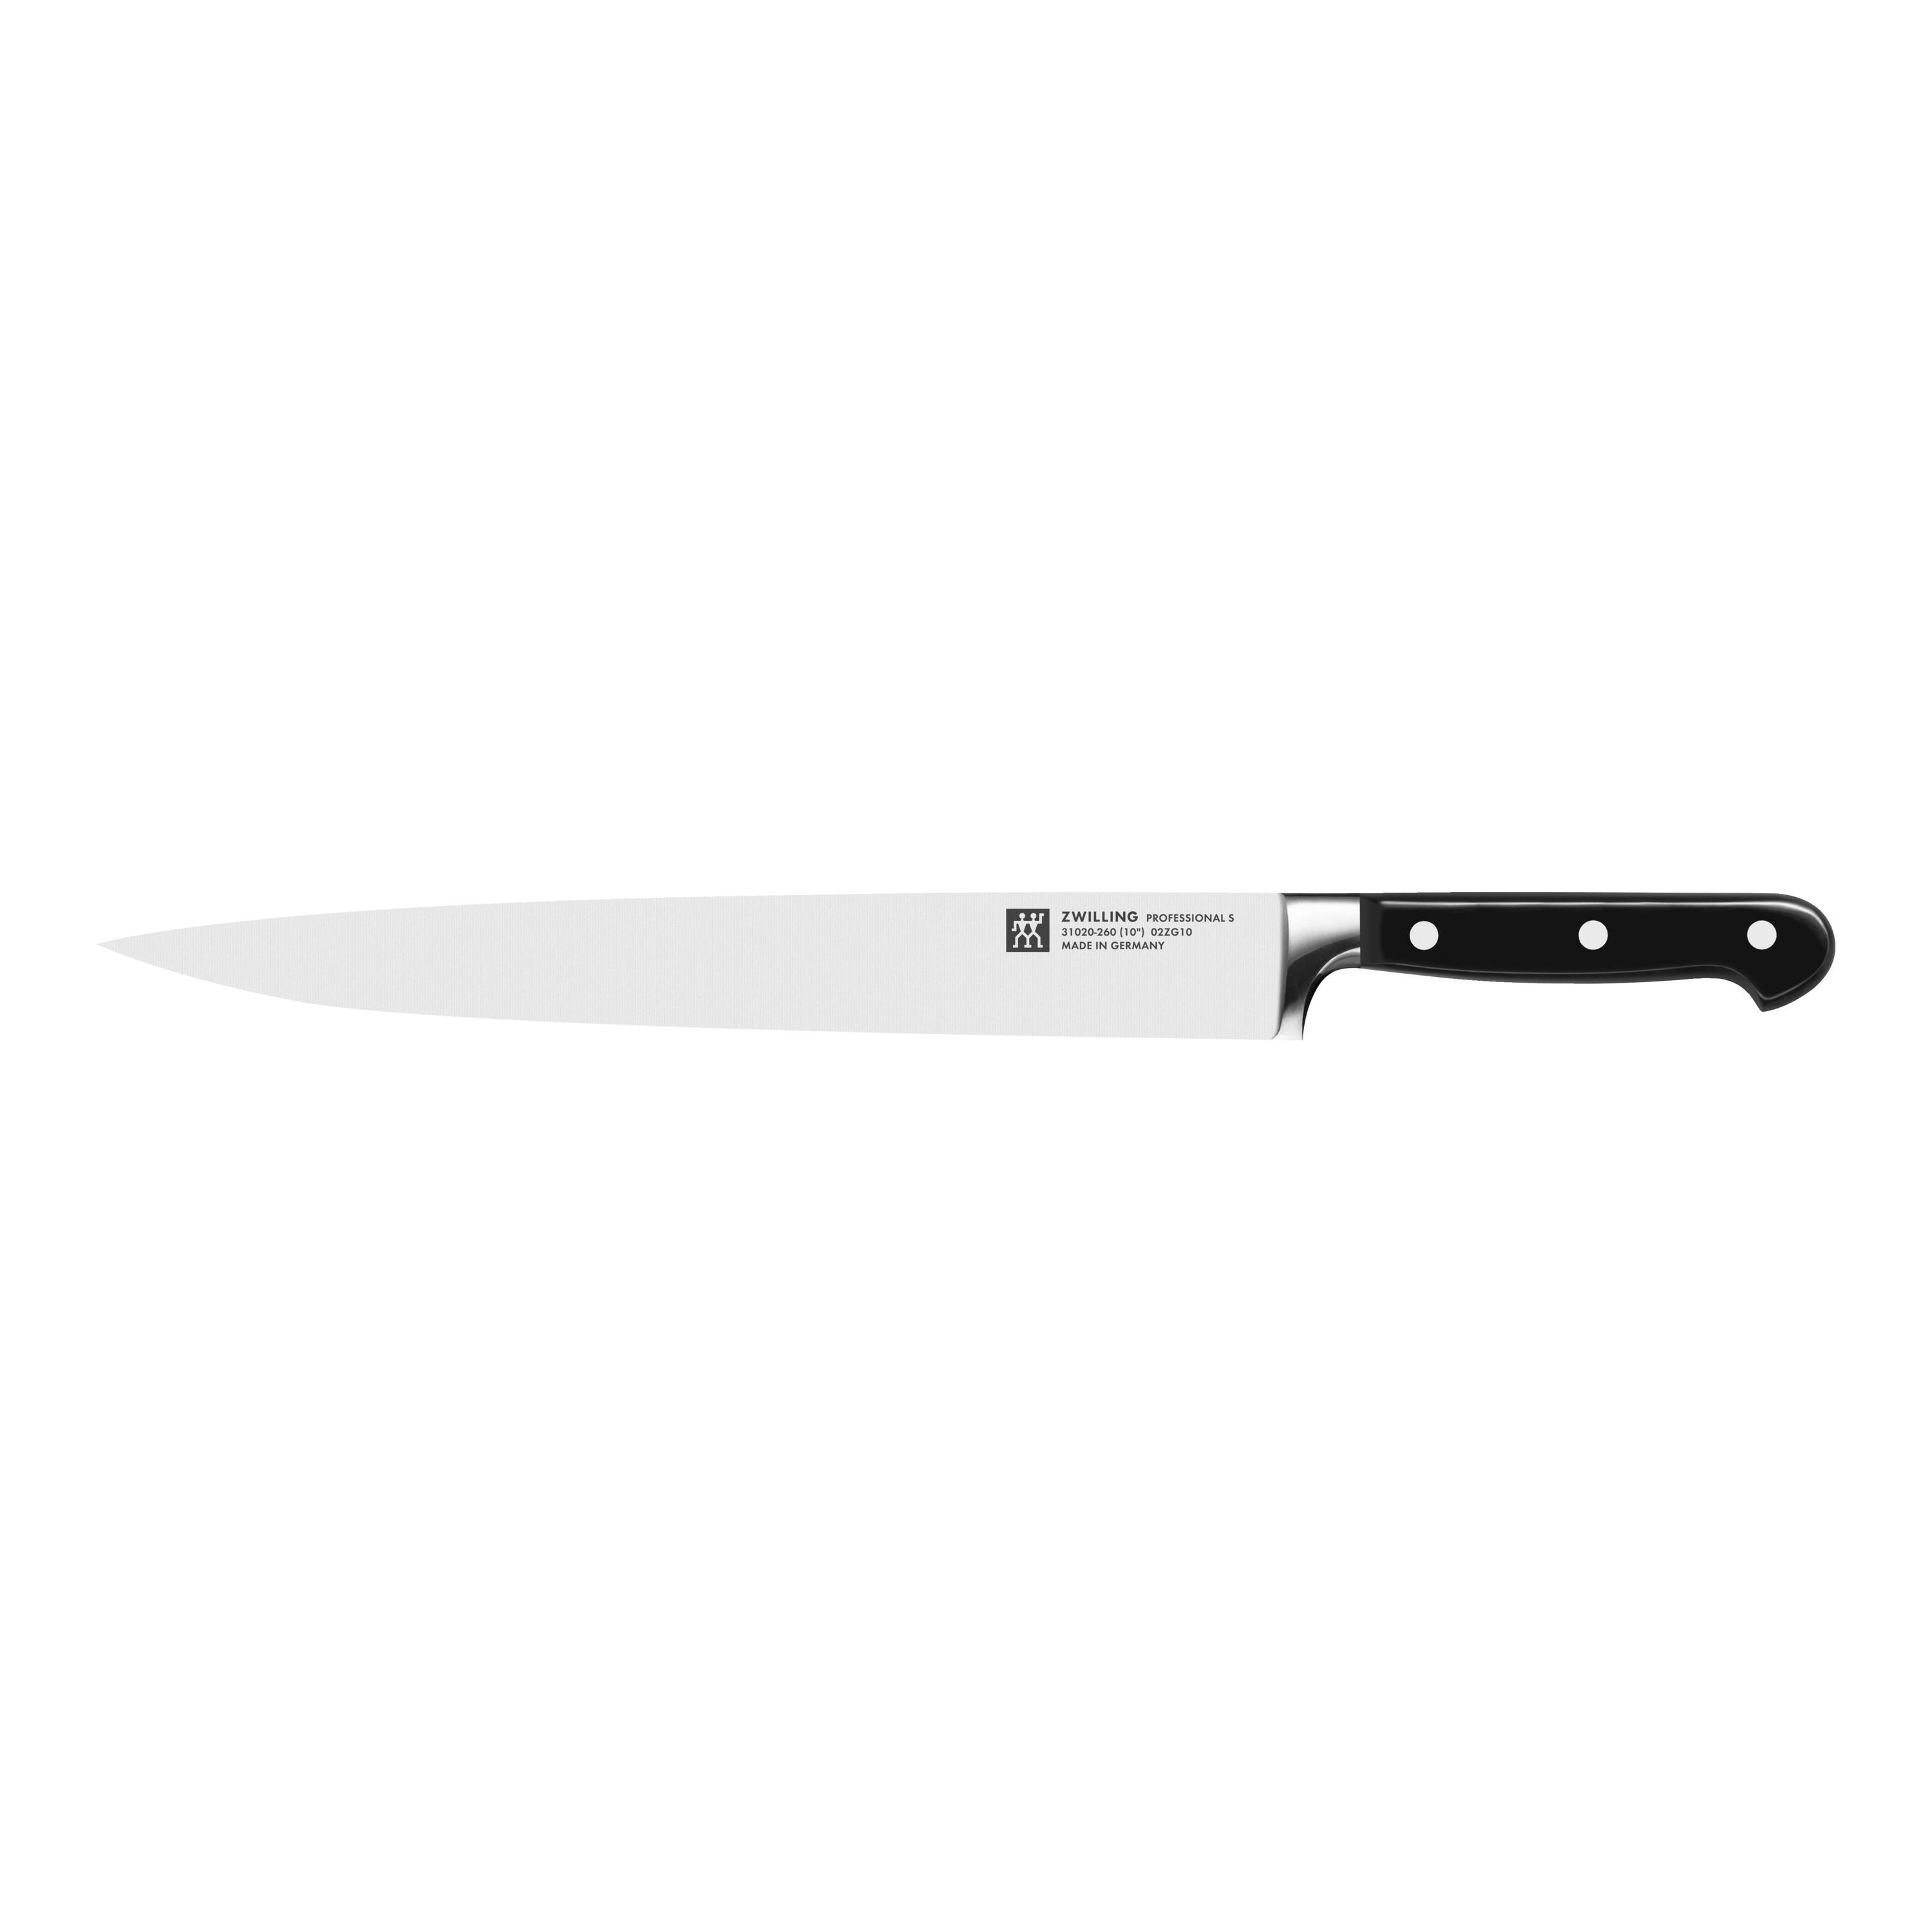 ZWILLING Professional S Couteau à trancher 26 cm, Tranchant lisse